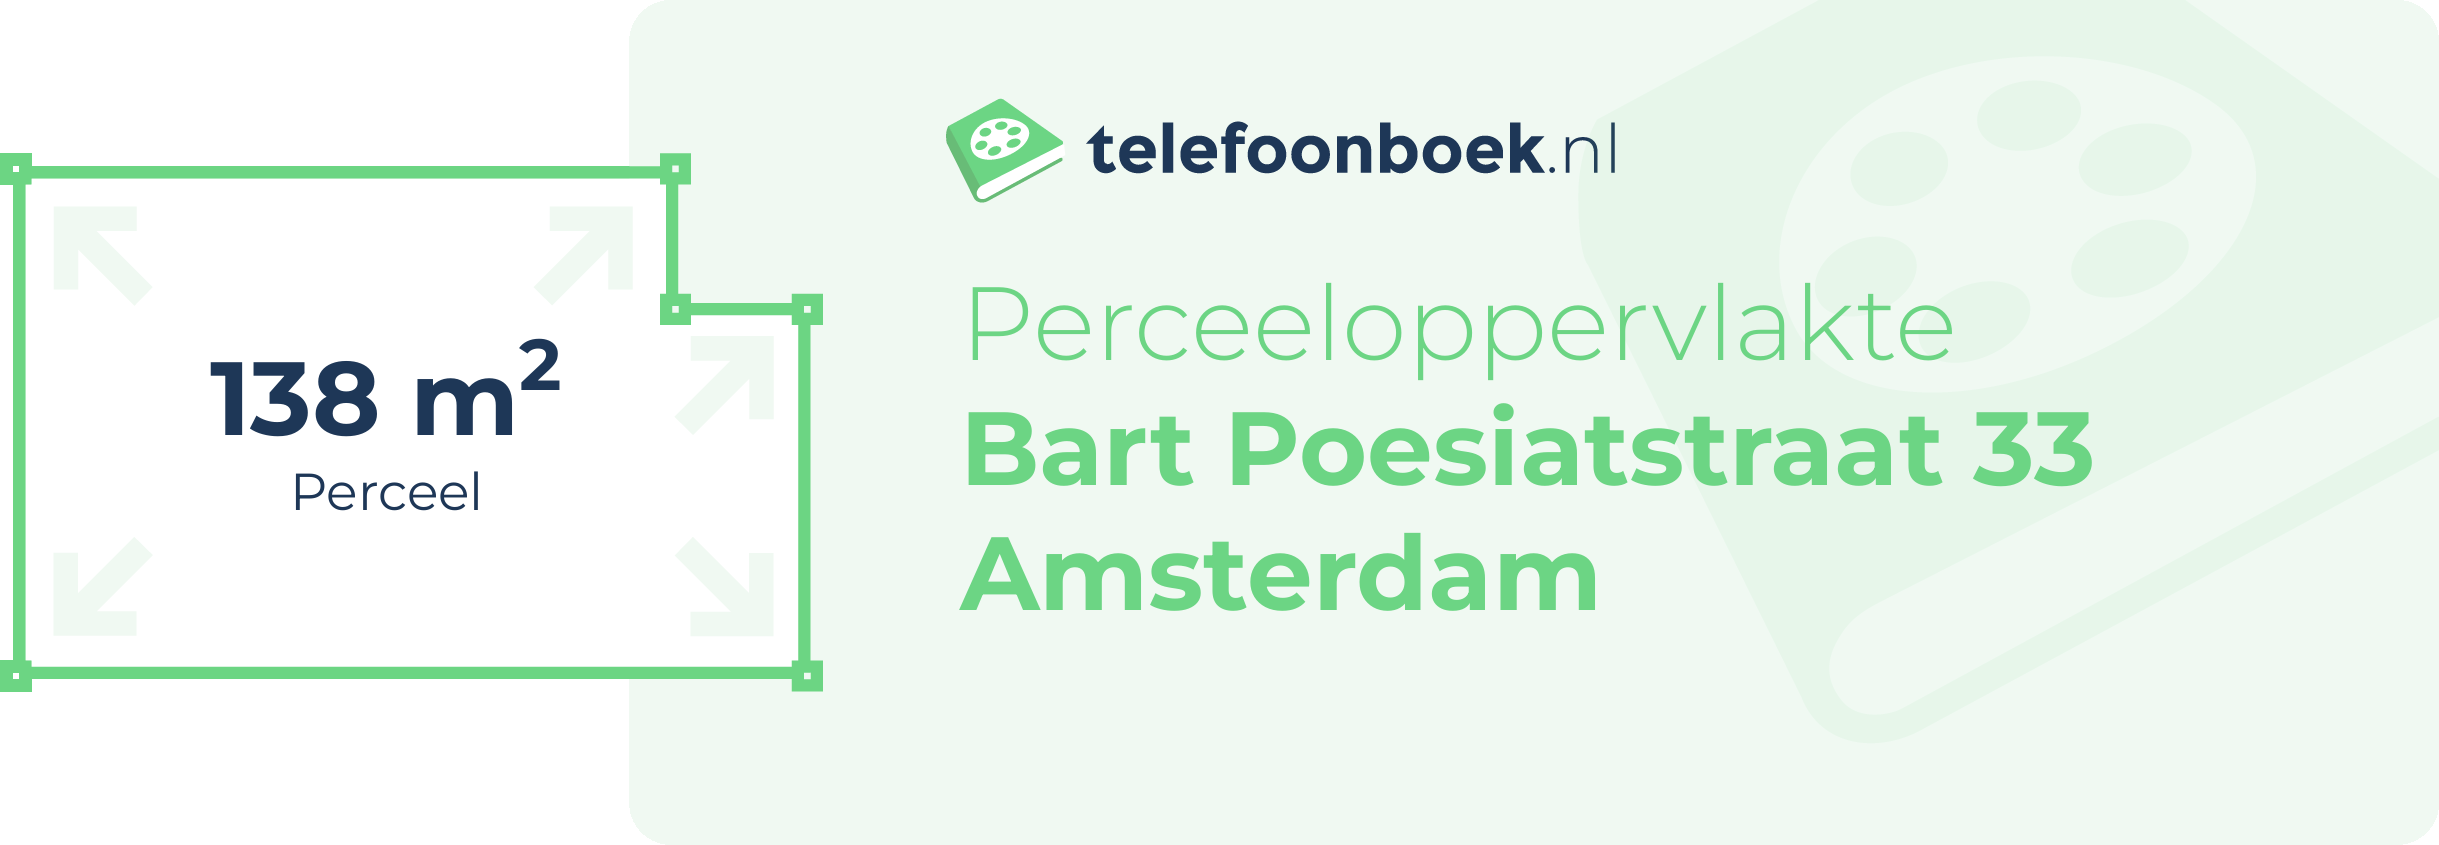 Perceeloppervlakte Bart Poesiatstraat 33 Amsterdam